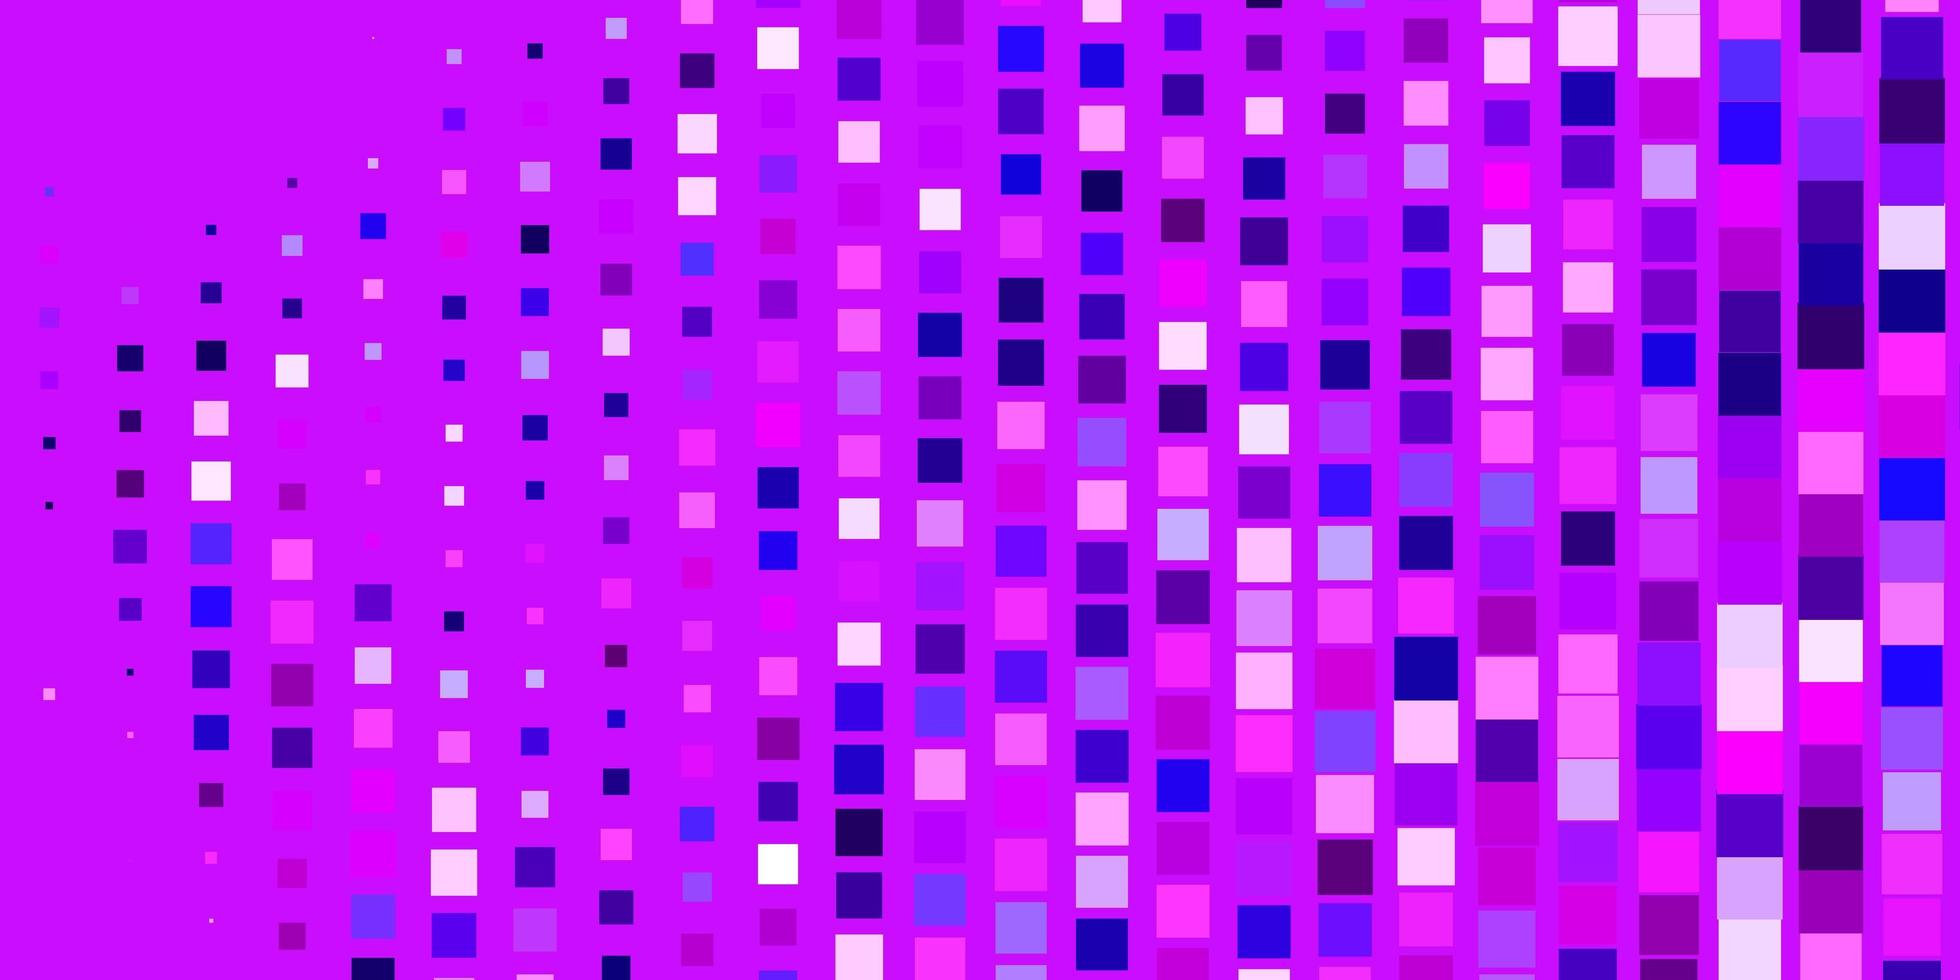 ljuslila, rosa vektormönster i fyrkantig stil. färgglad illustration med lutningsrektanglar och rutor. mönster för affärshäften, broschyrer vektor